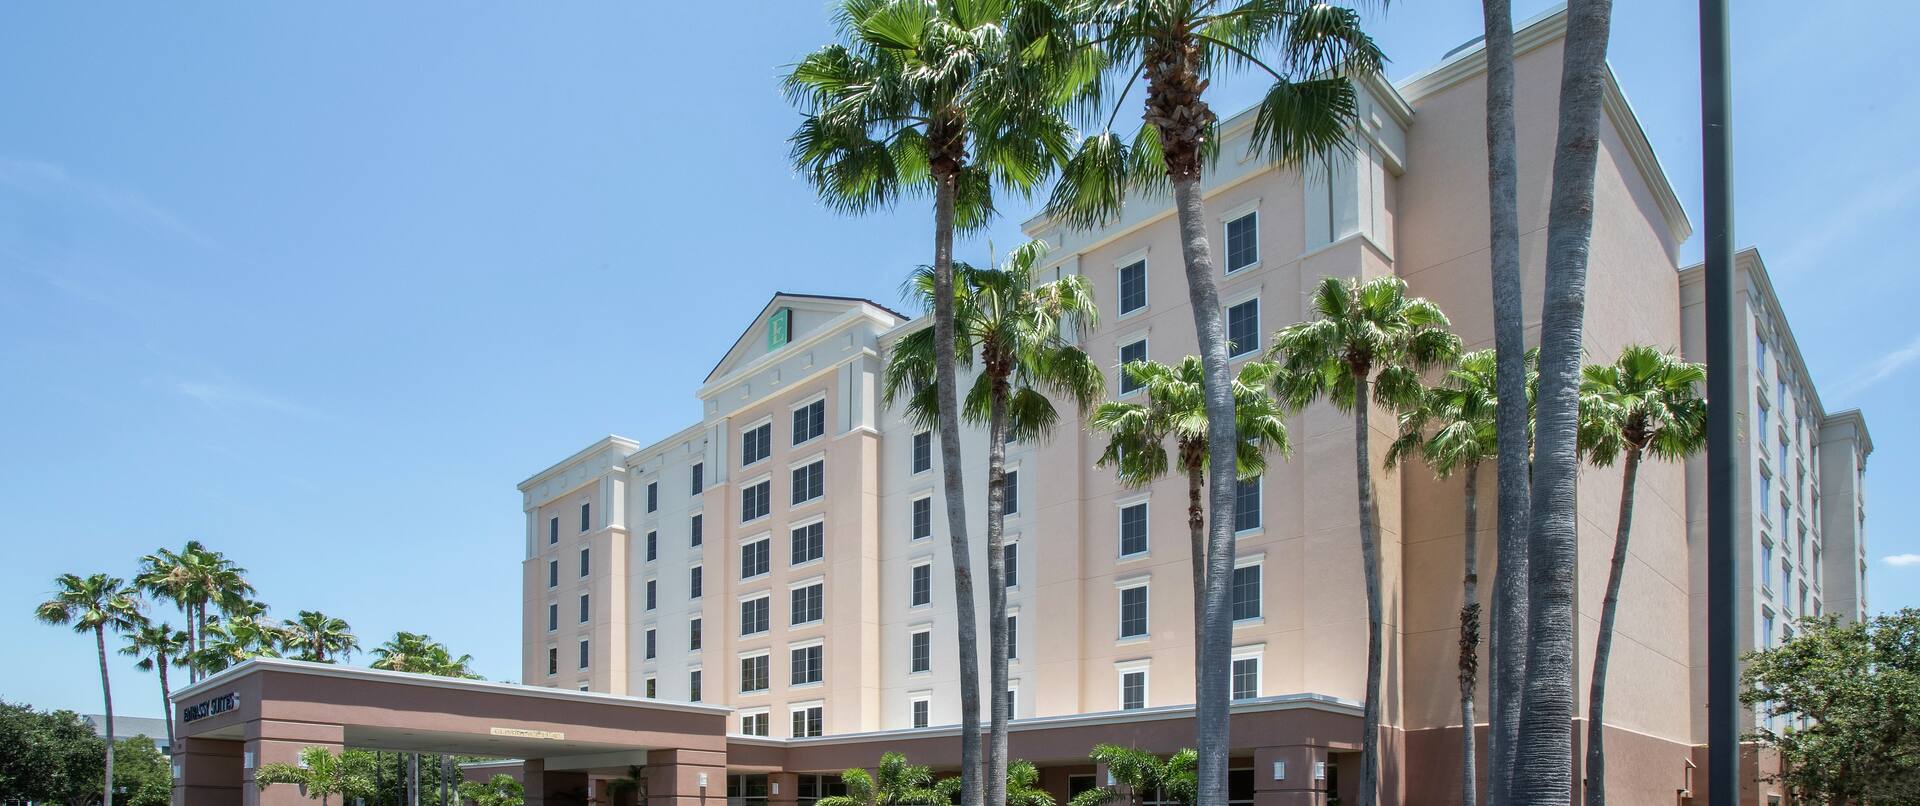 Fachada del hotel con palmeras